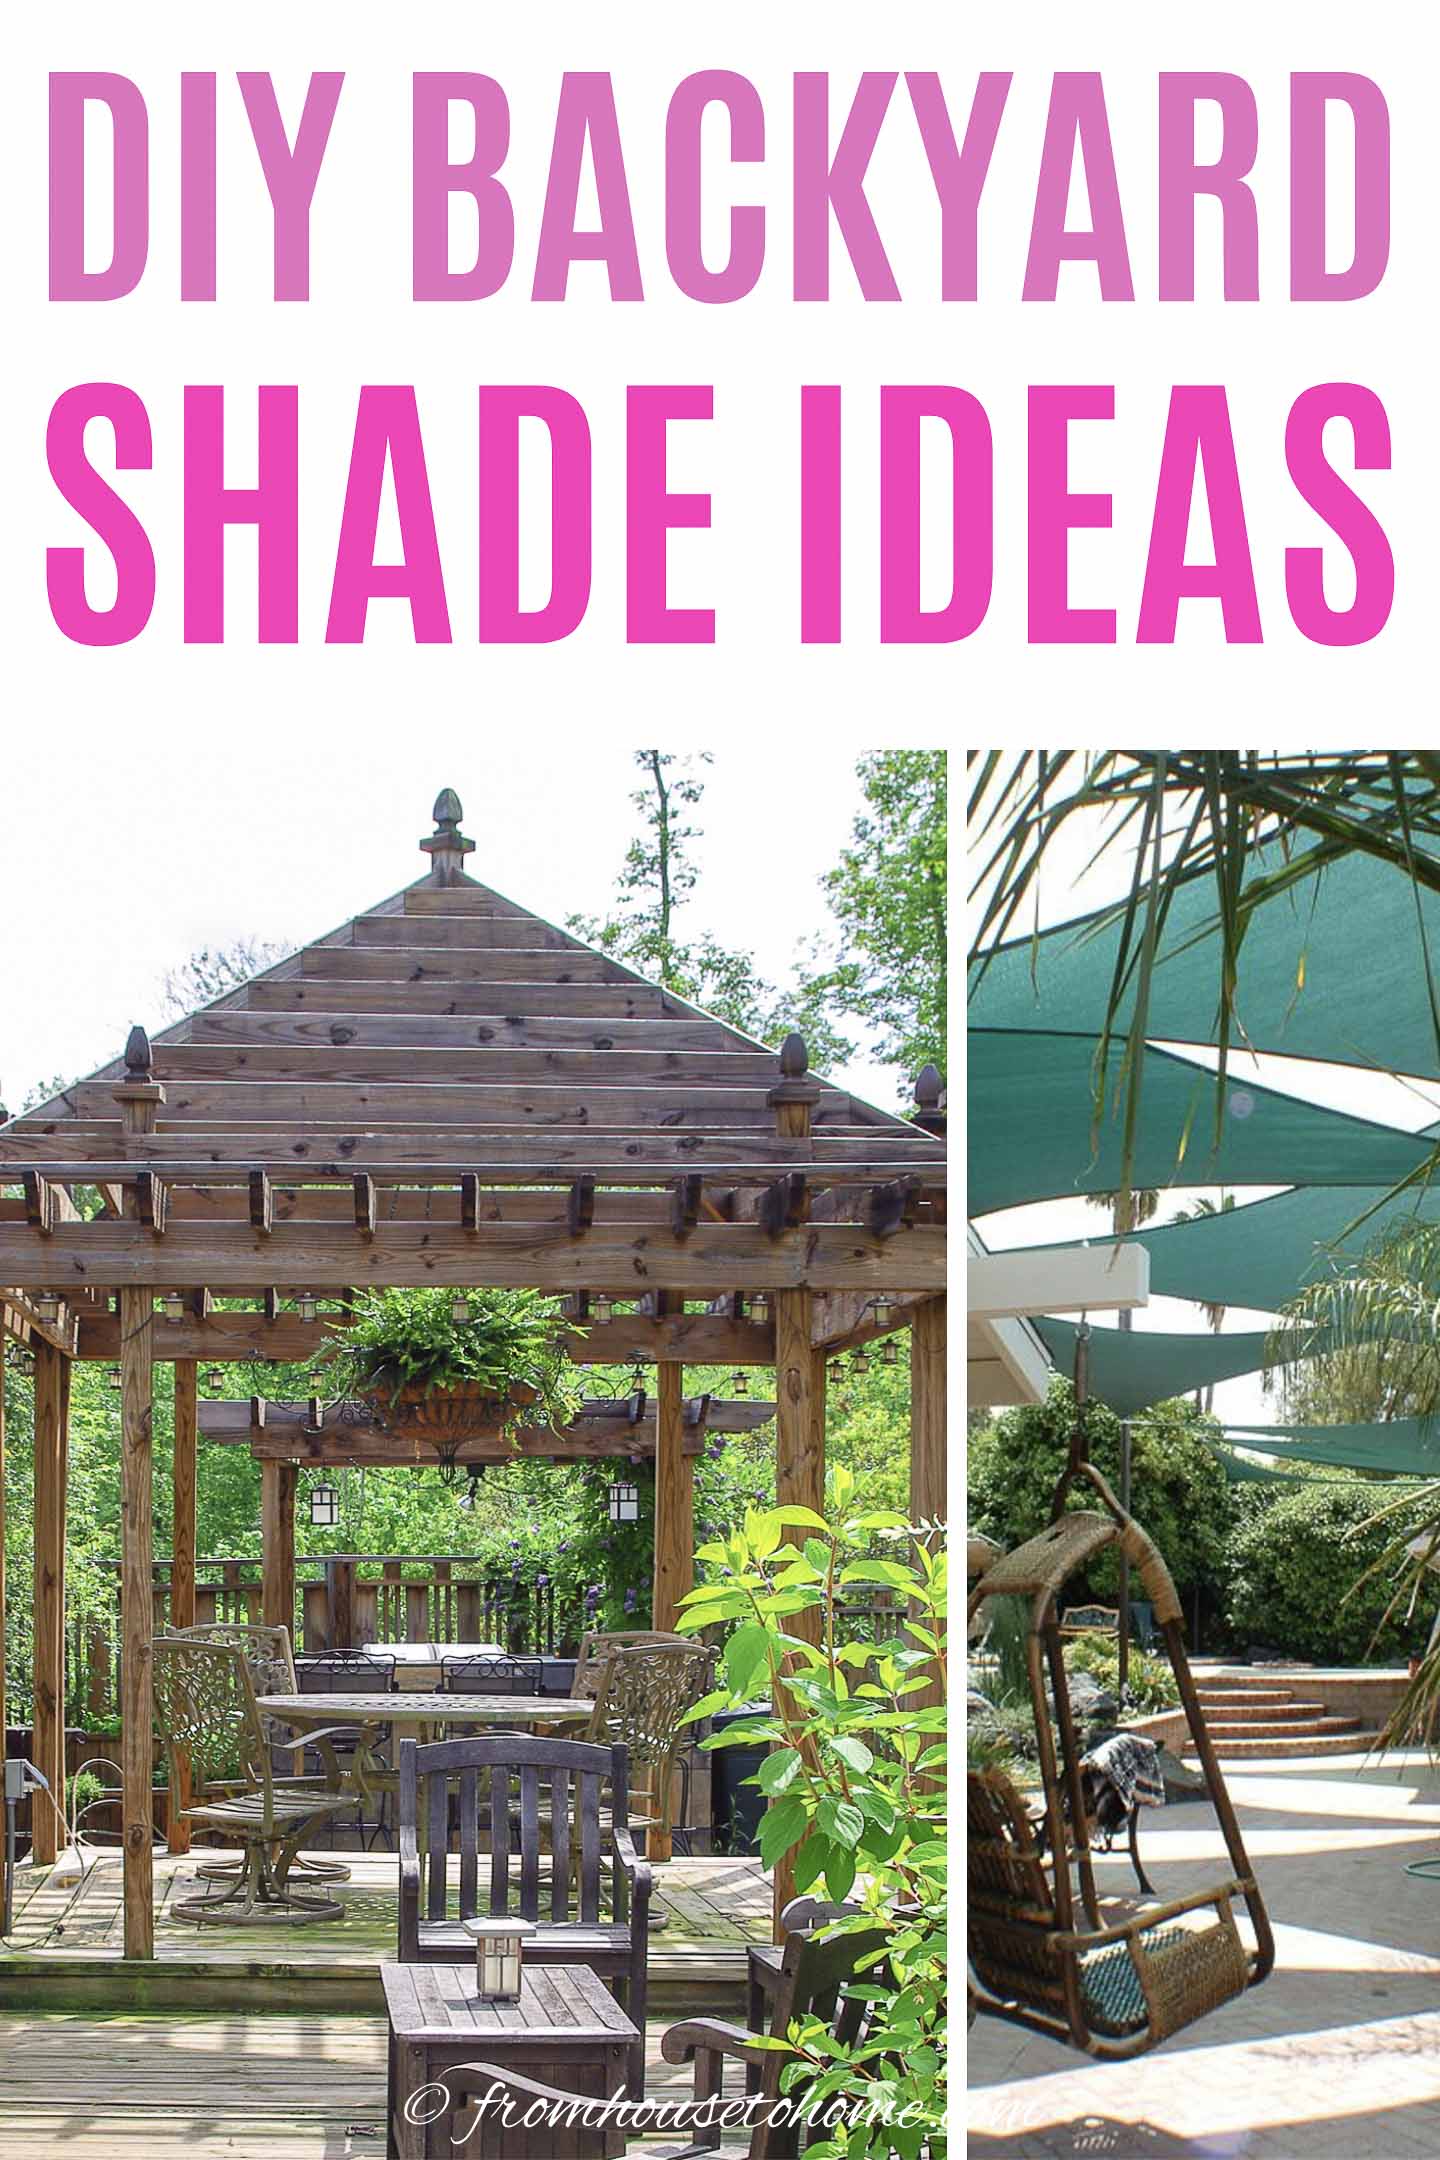 DIY backyard shade ideas